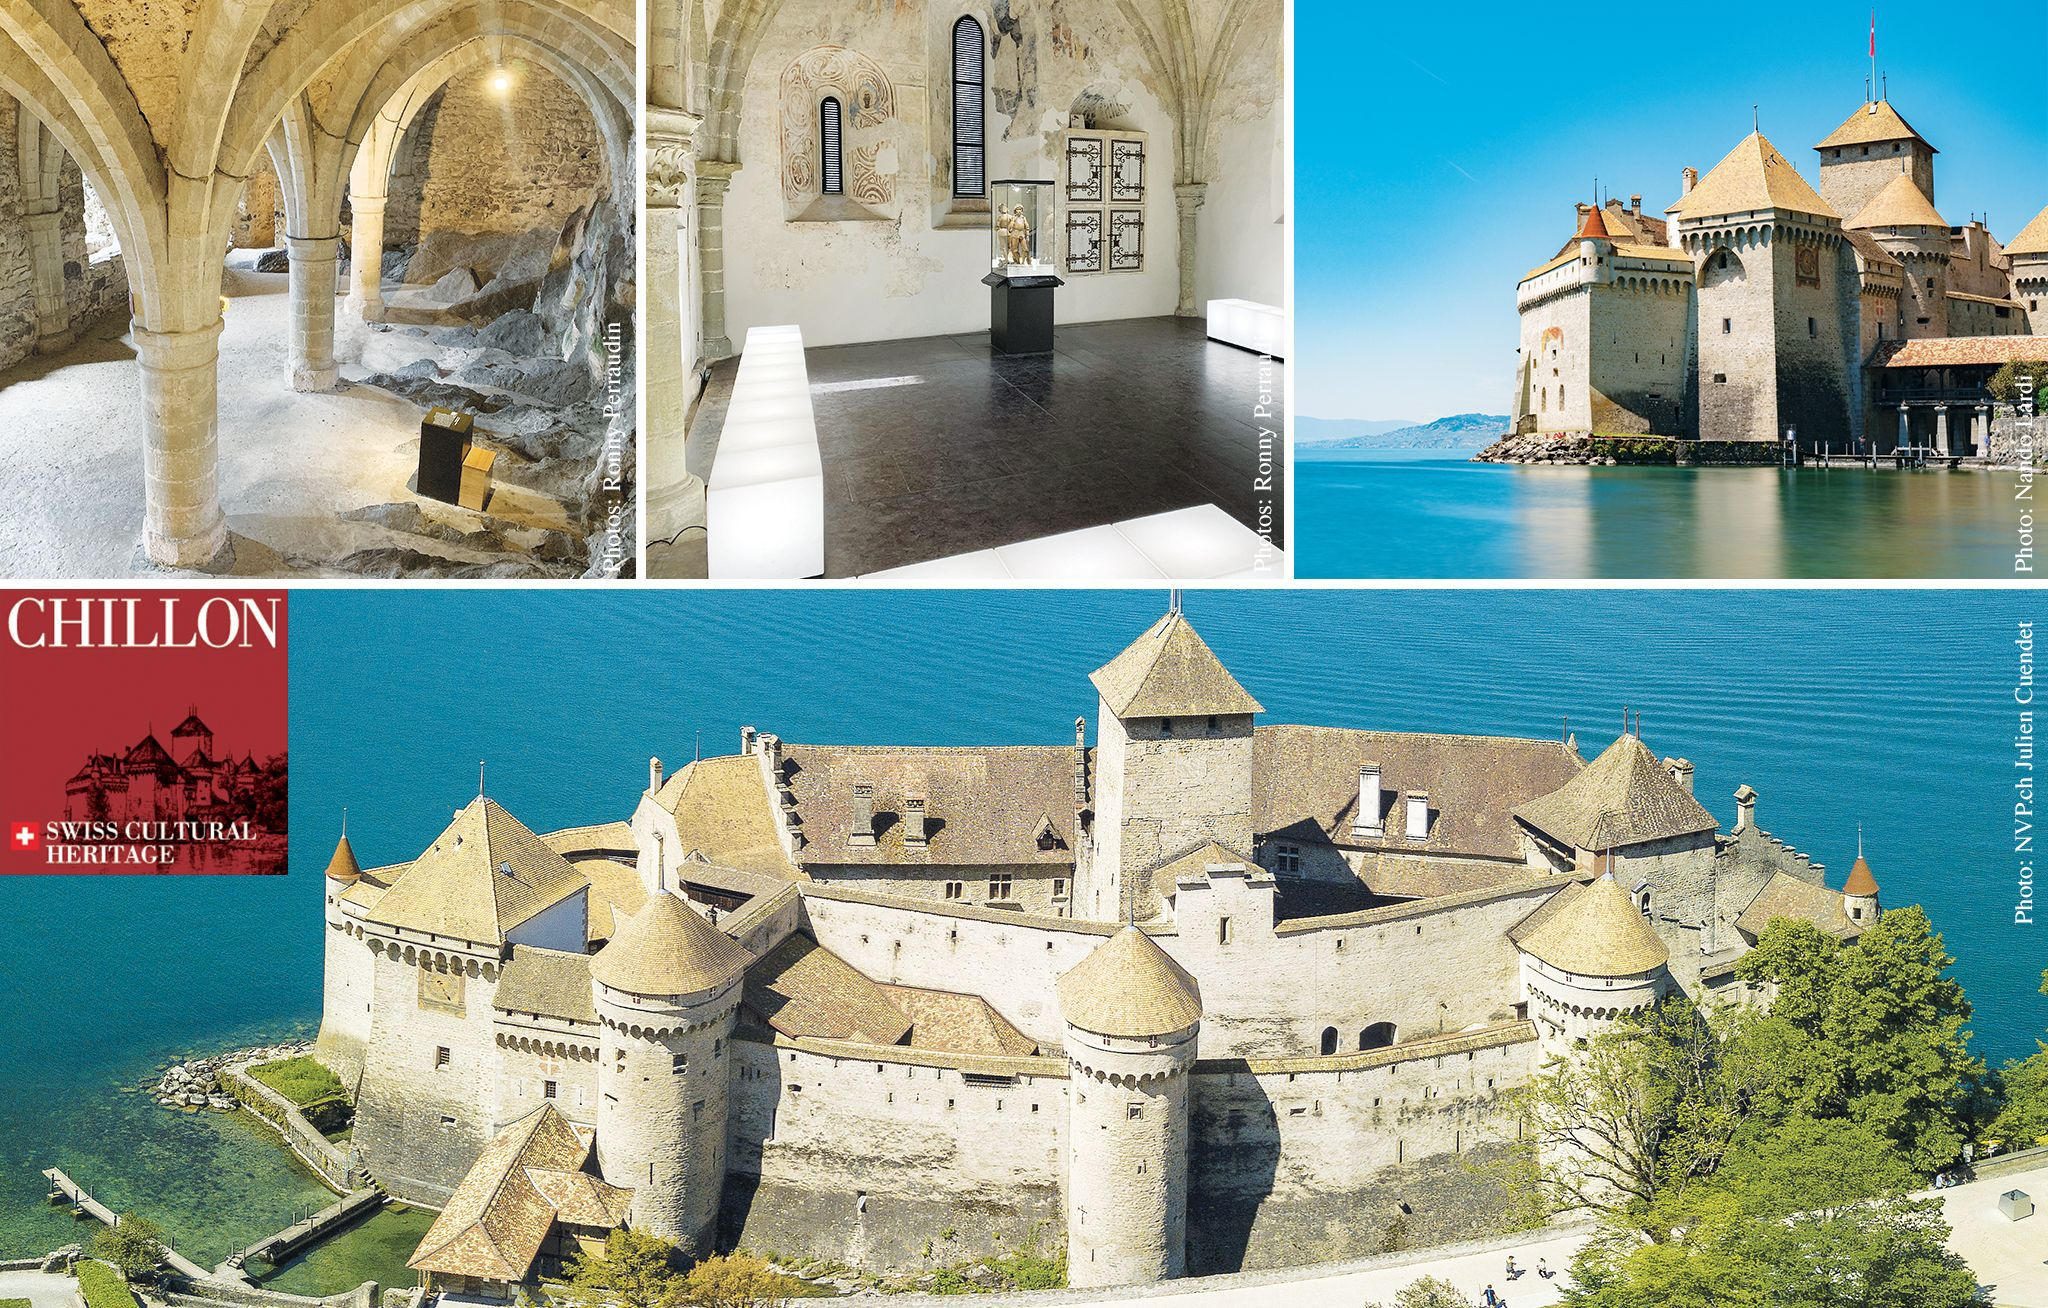 Chillon Le château médiéval et romantique à visiter absolument